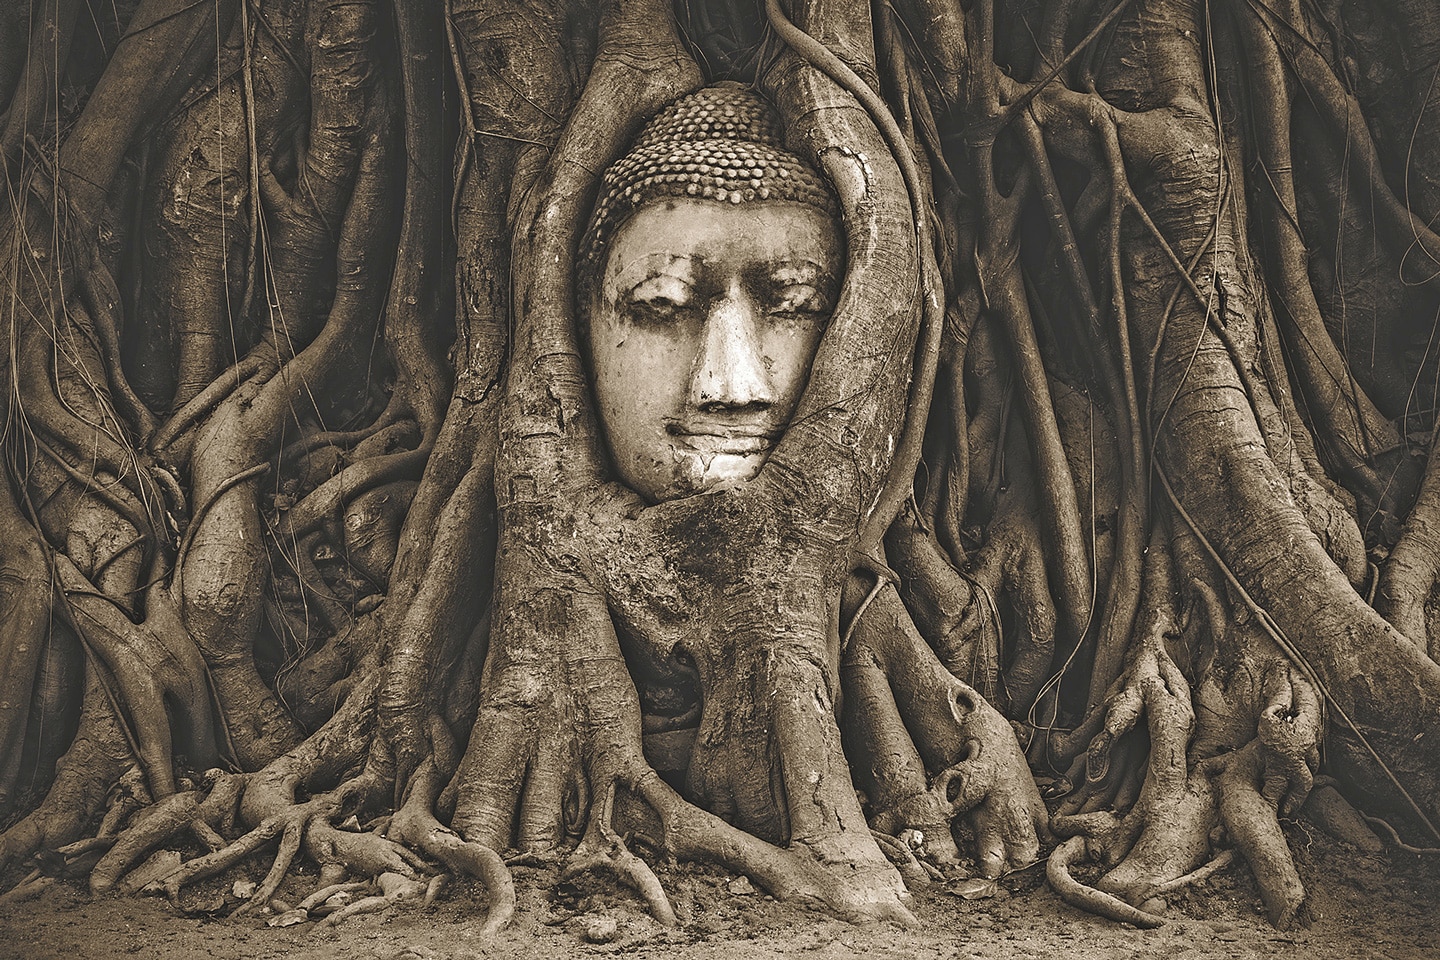 Buddha face between mangrove roots